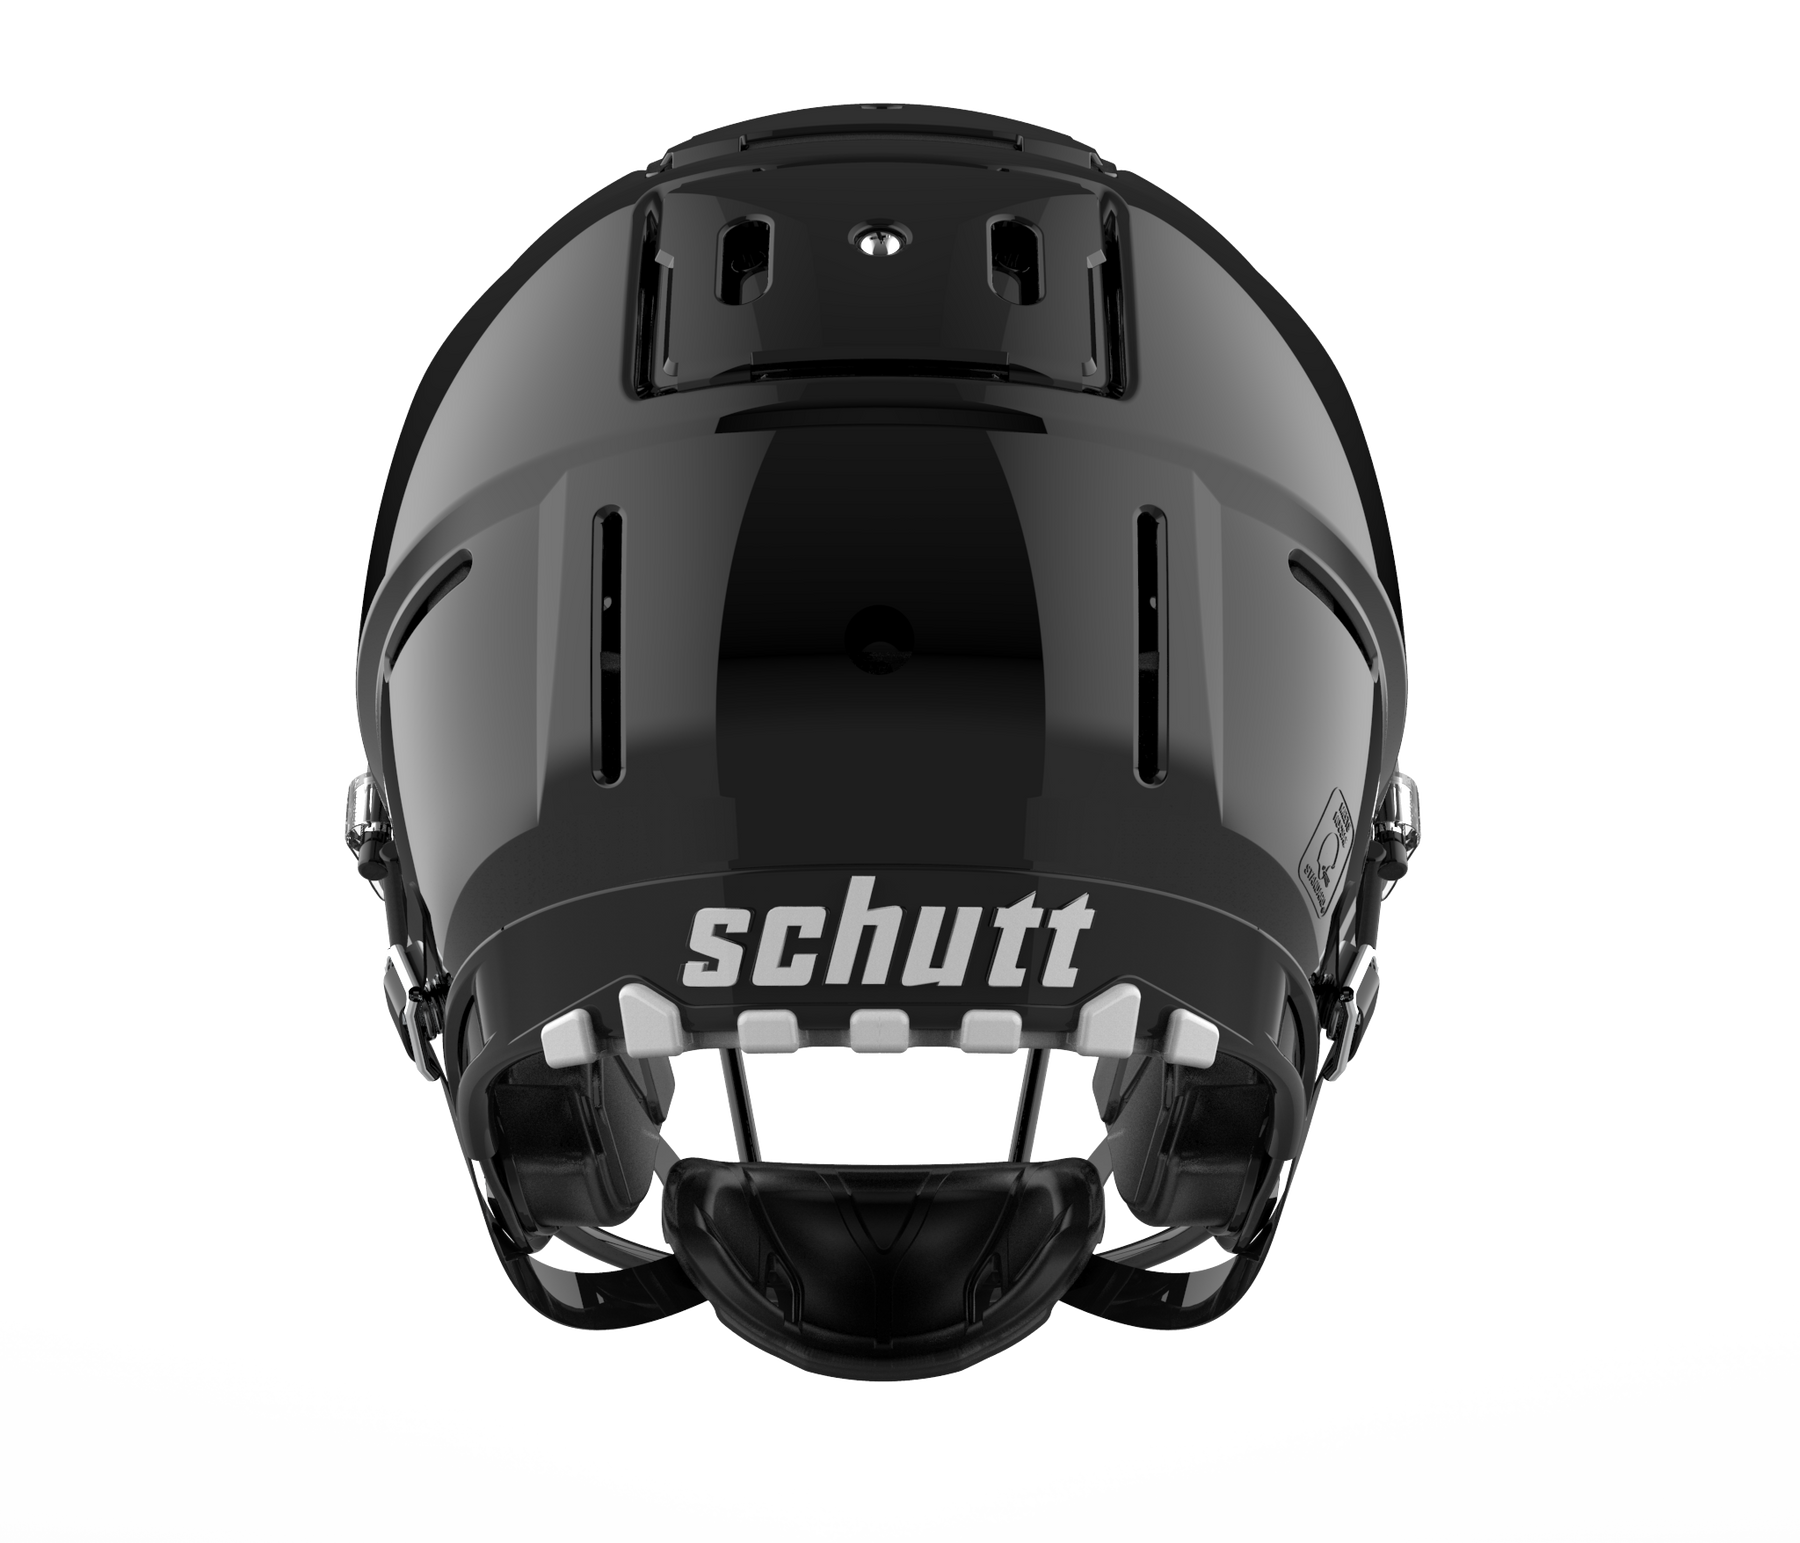 Shiny Helmets No Help - Inside Hockey